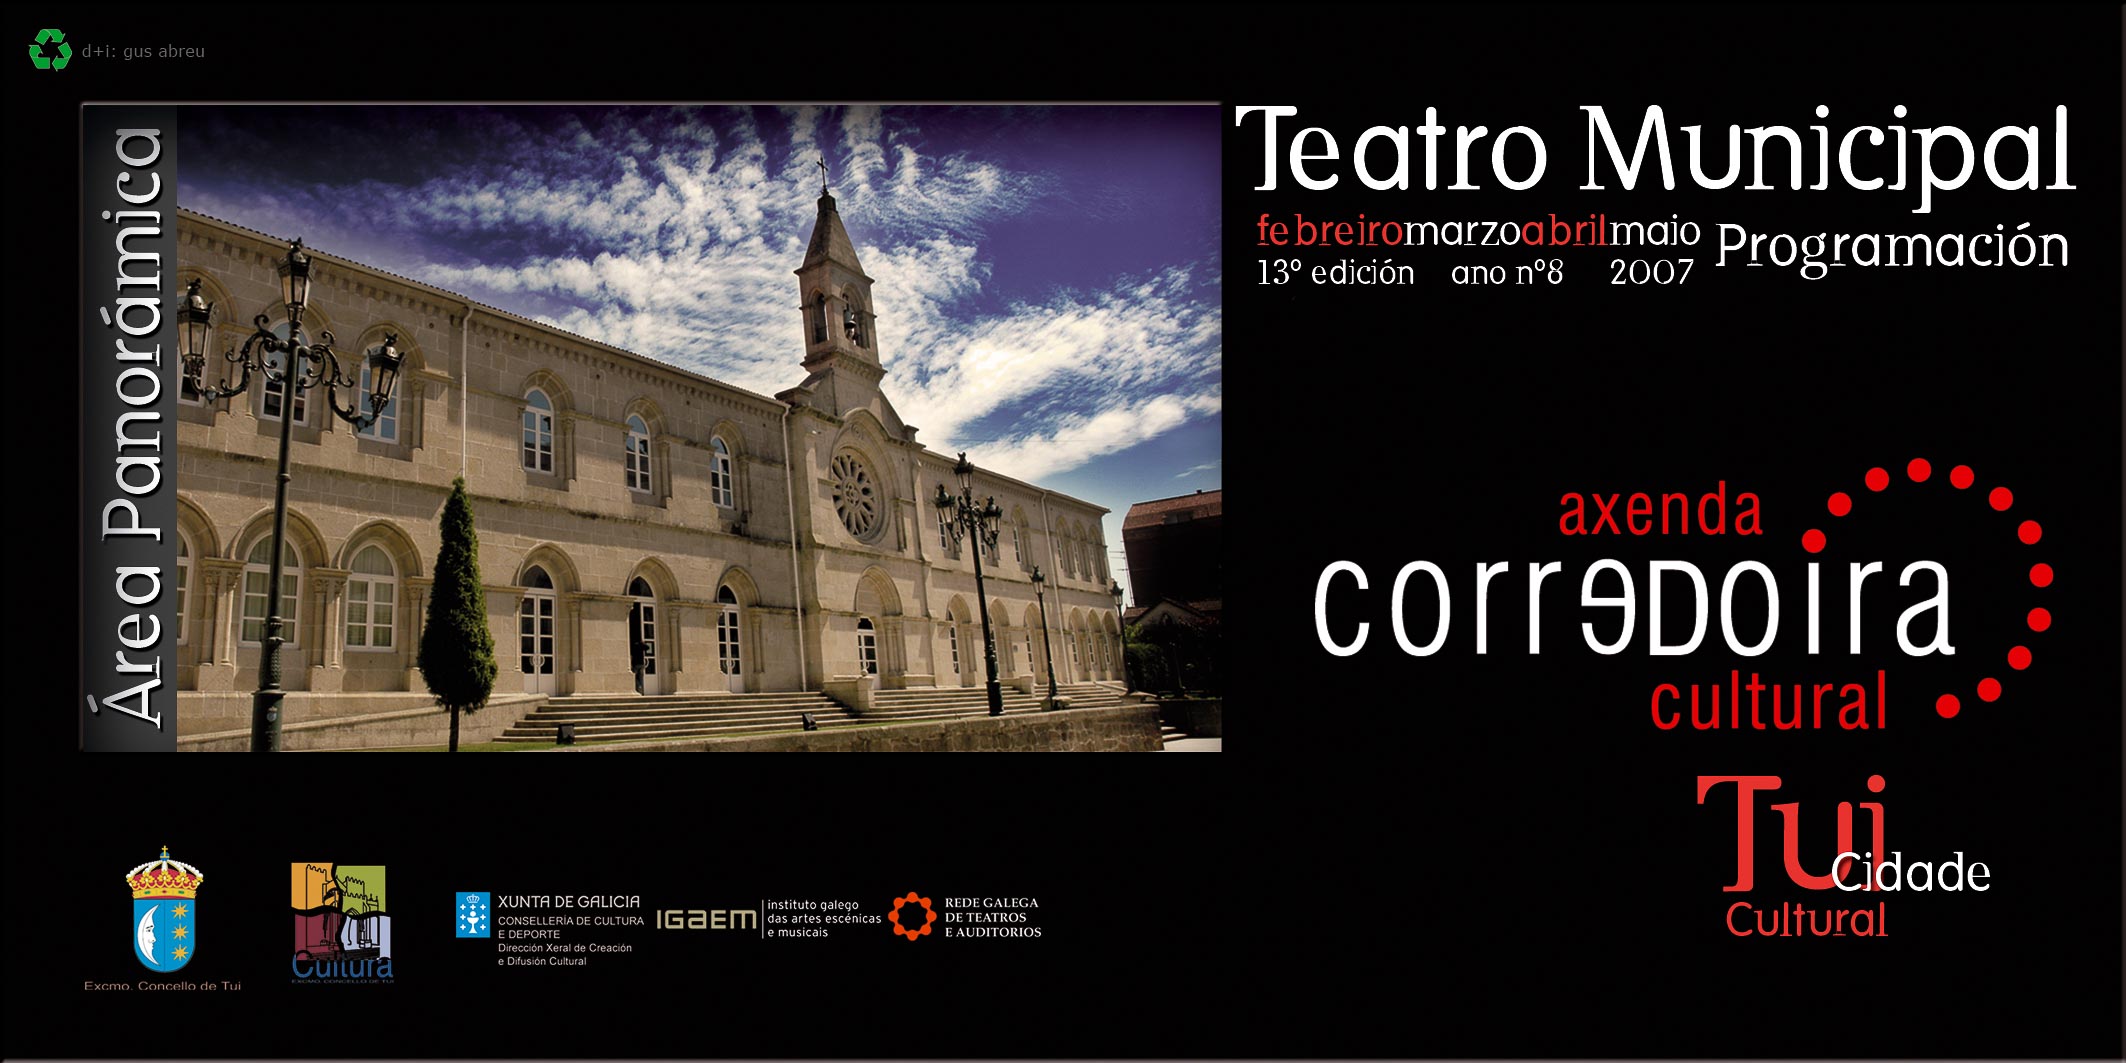 concello-de-tui-2007 1Âº portada teatro